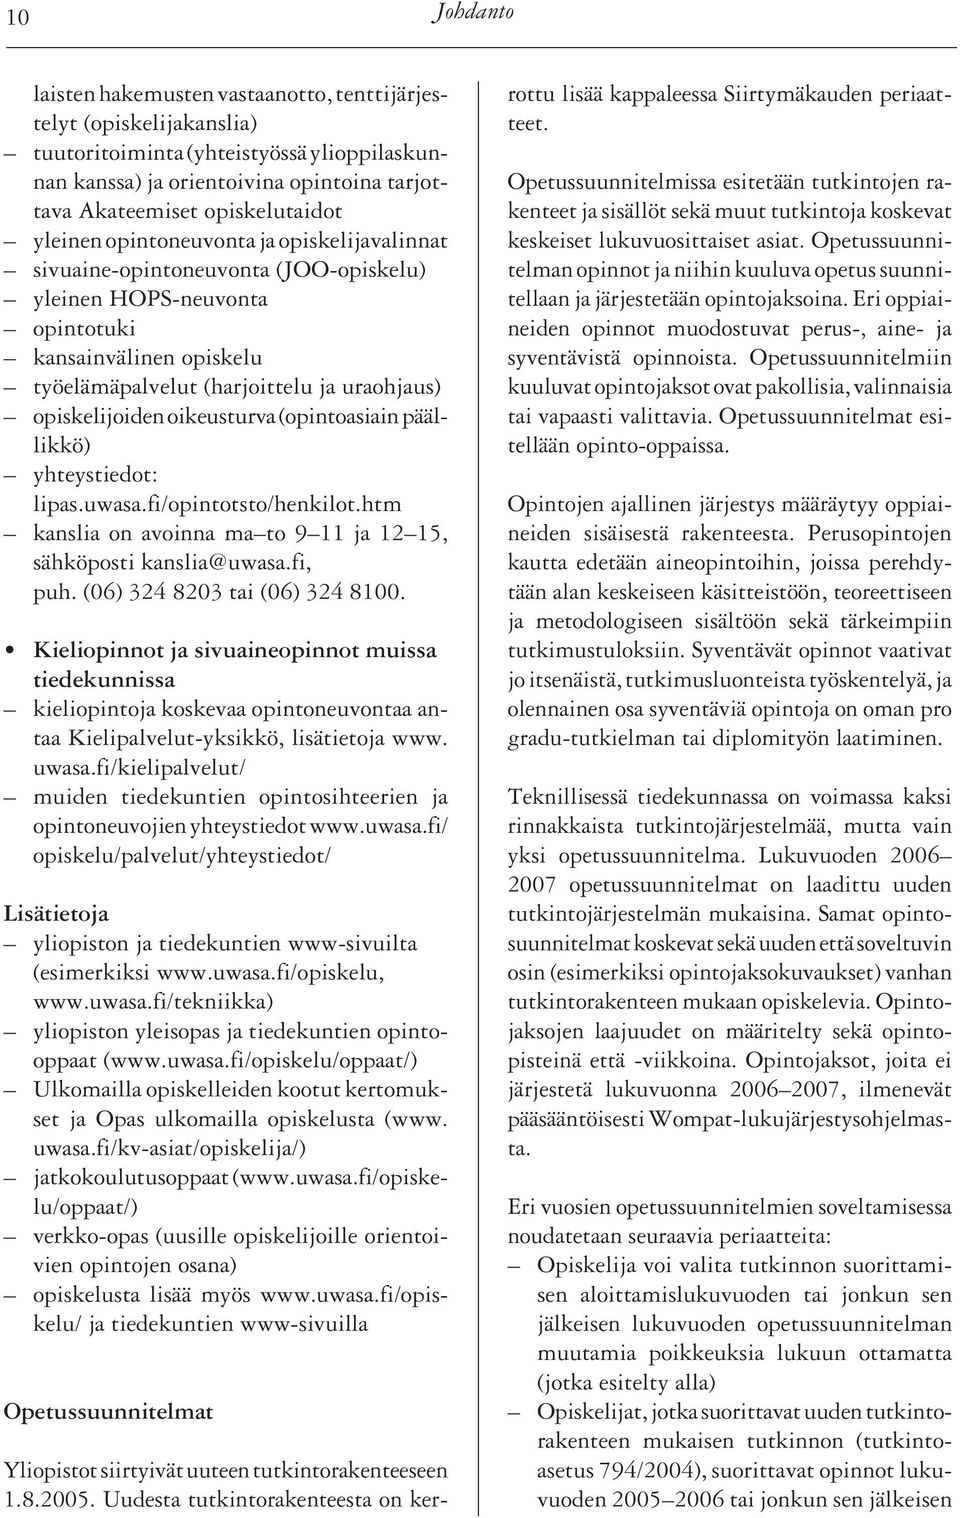 opiskelijoiden oikeusturva (opintoasiain päällikkö) yhteystiedot: lipas.uwasa.fi/opintotsto/henkilot.htm kanslia on avoinna ma to 9 11 ja 12 15, sähköposti kanslia@uwasa.fi, puh.